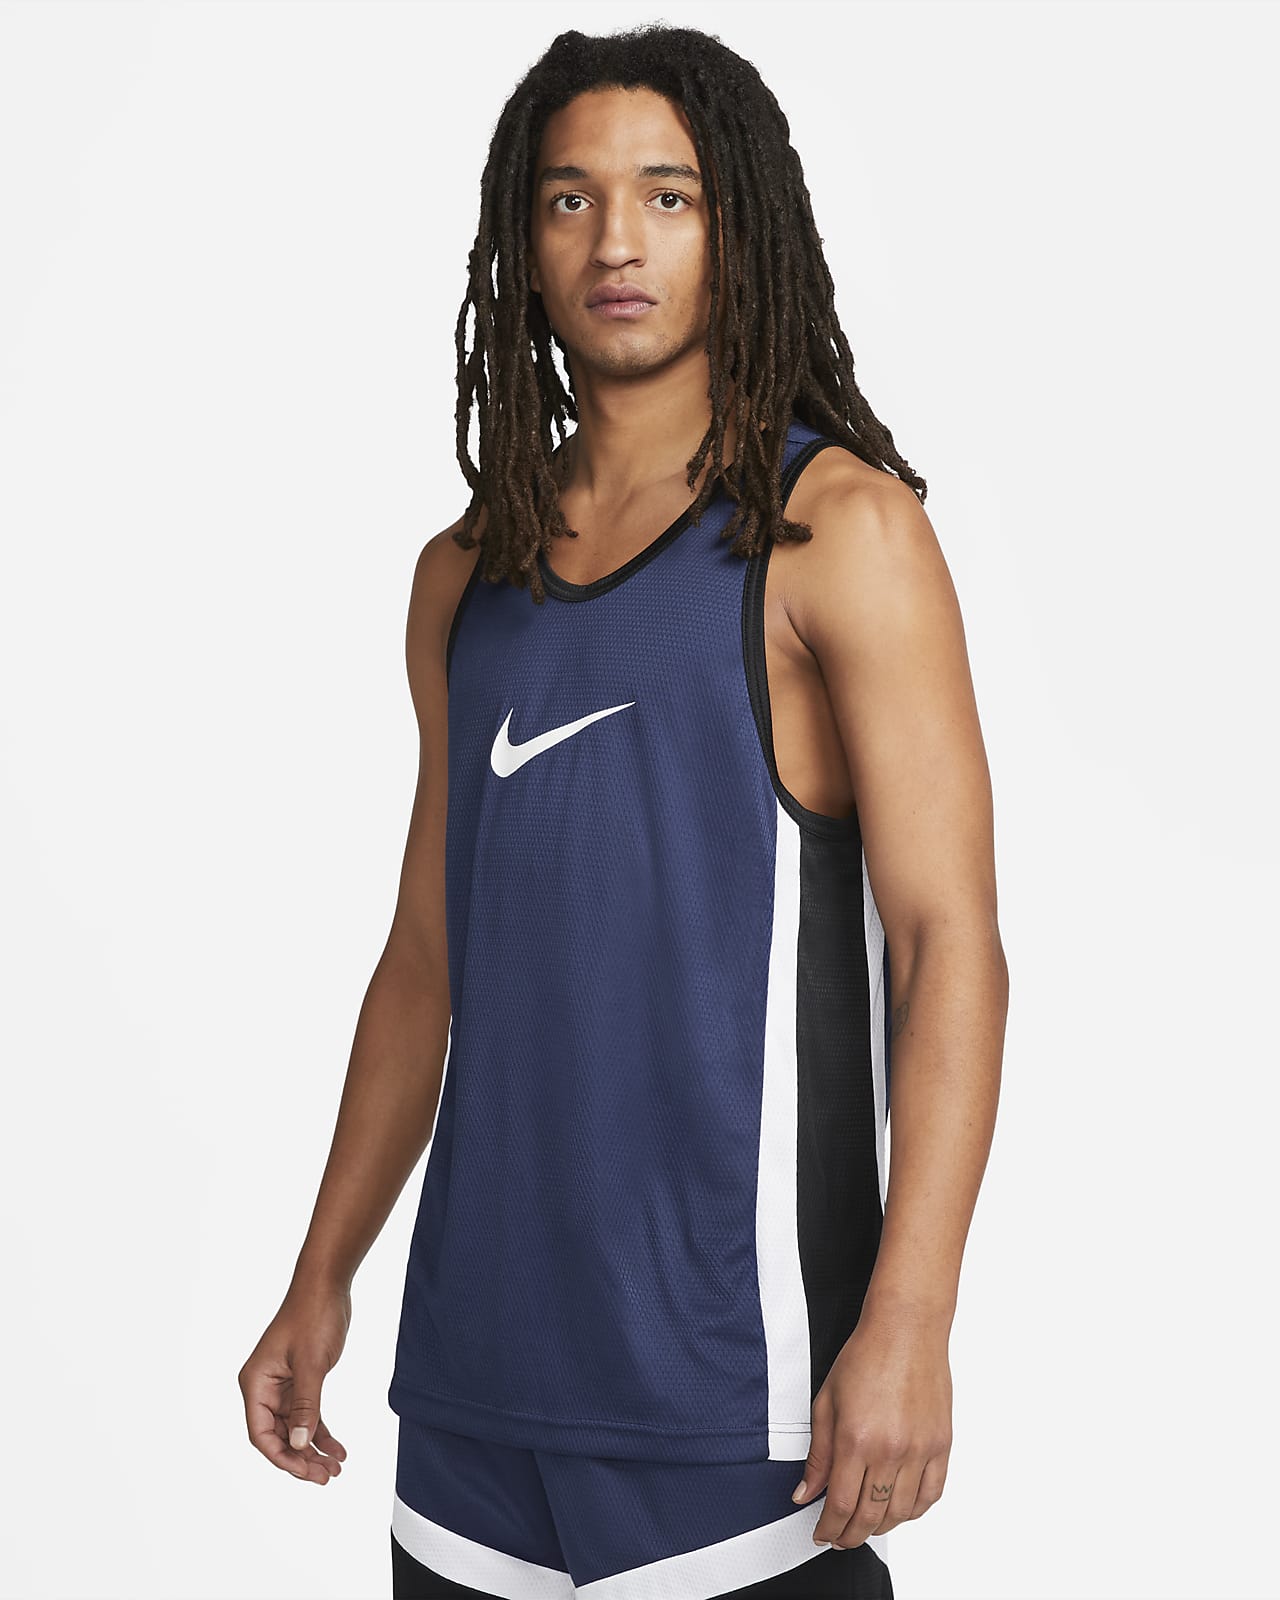 Nike Icon Dri-FIT basketbaljersey voor heren